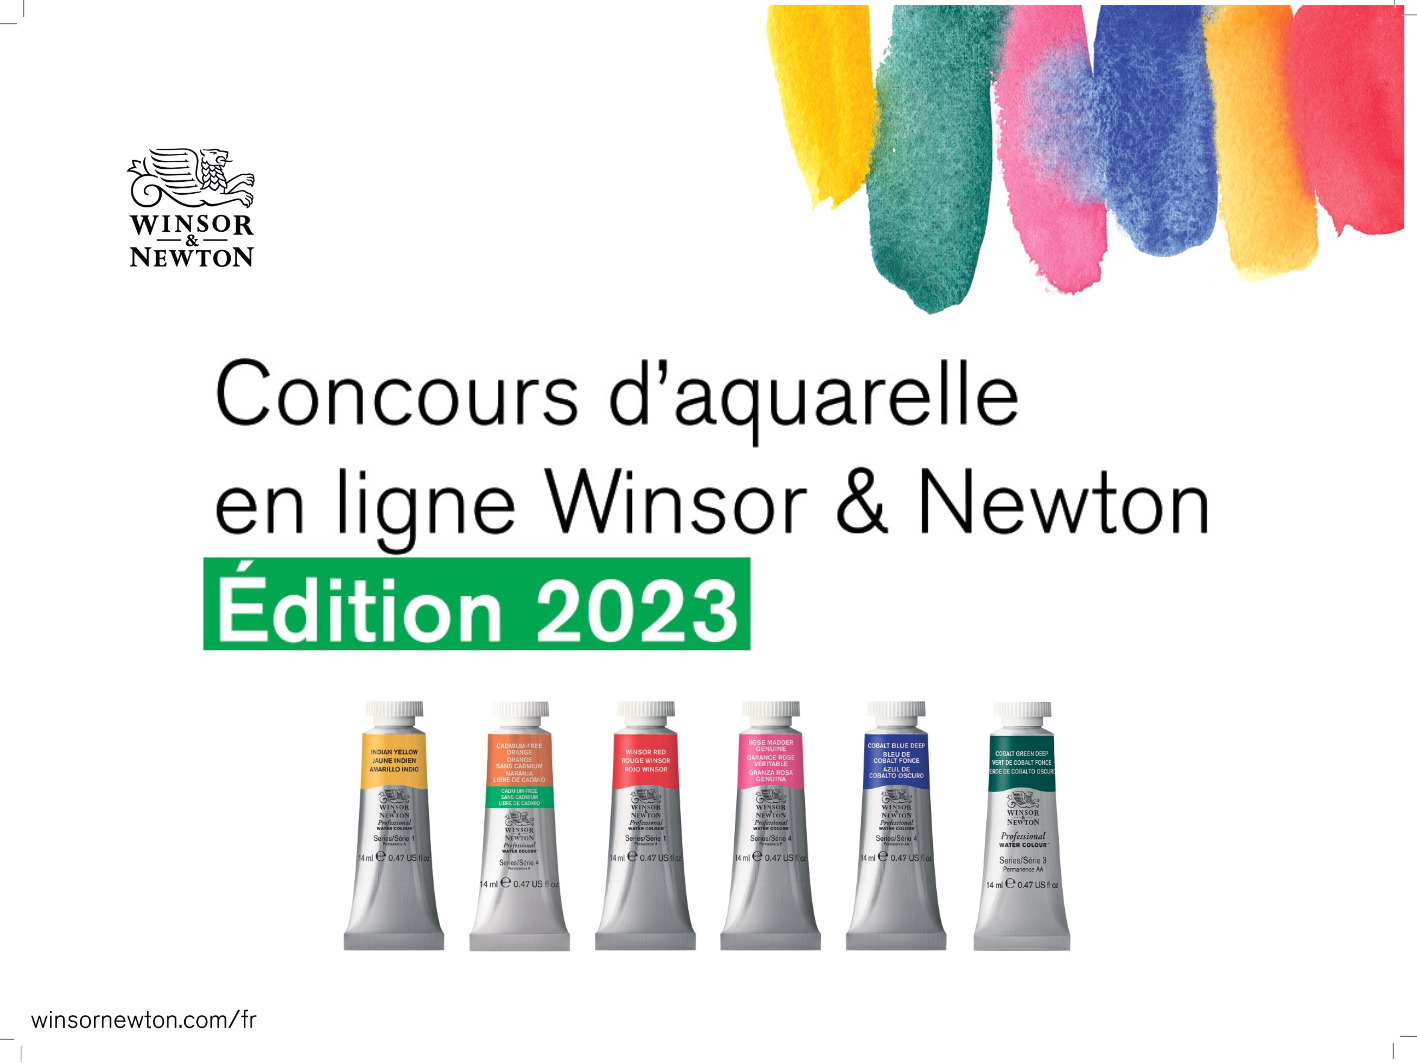 Concours d'aquarelle Winsor&Newton